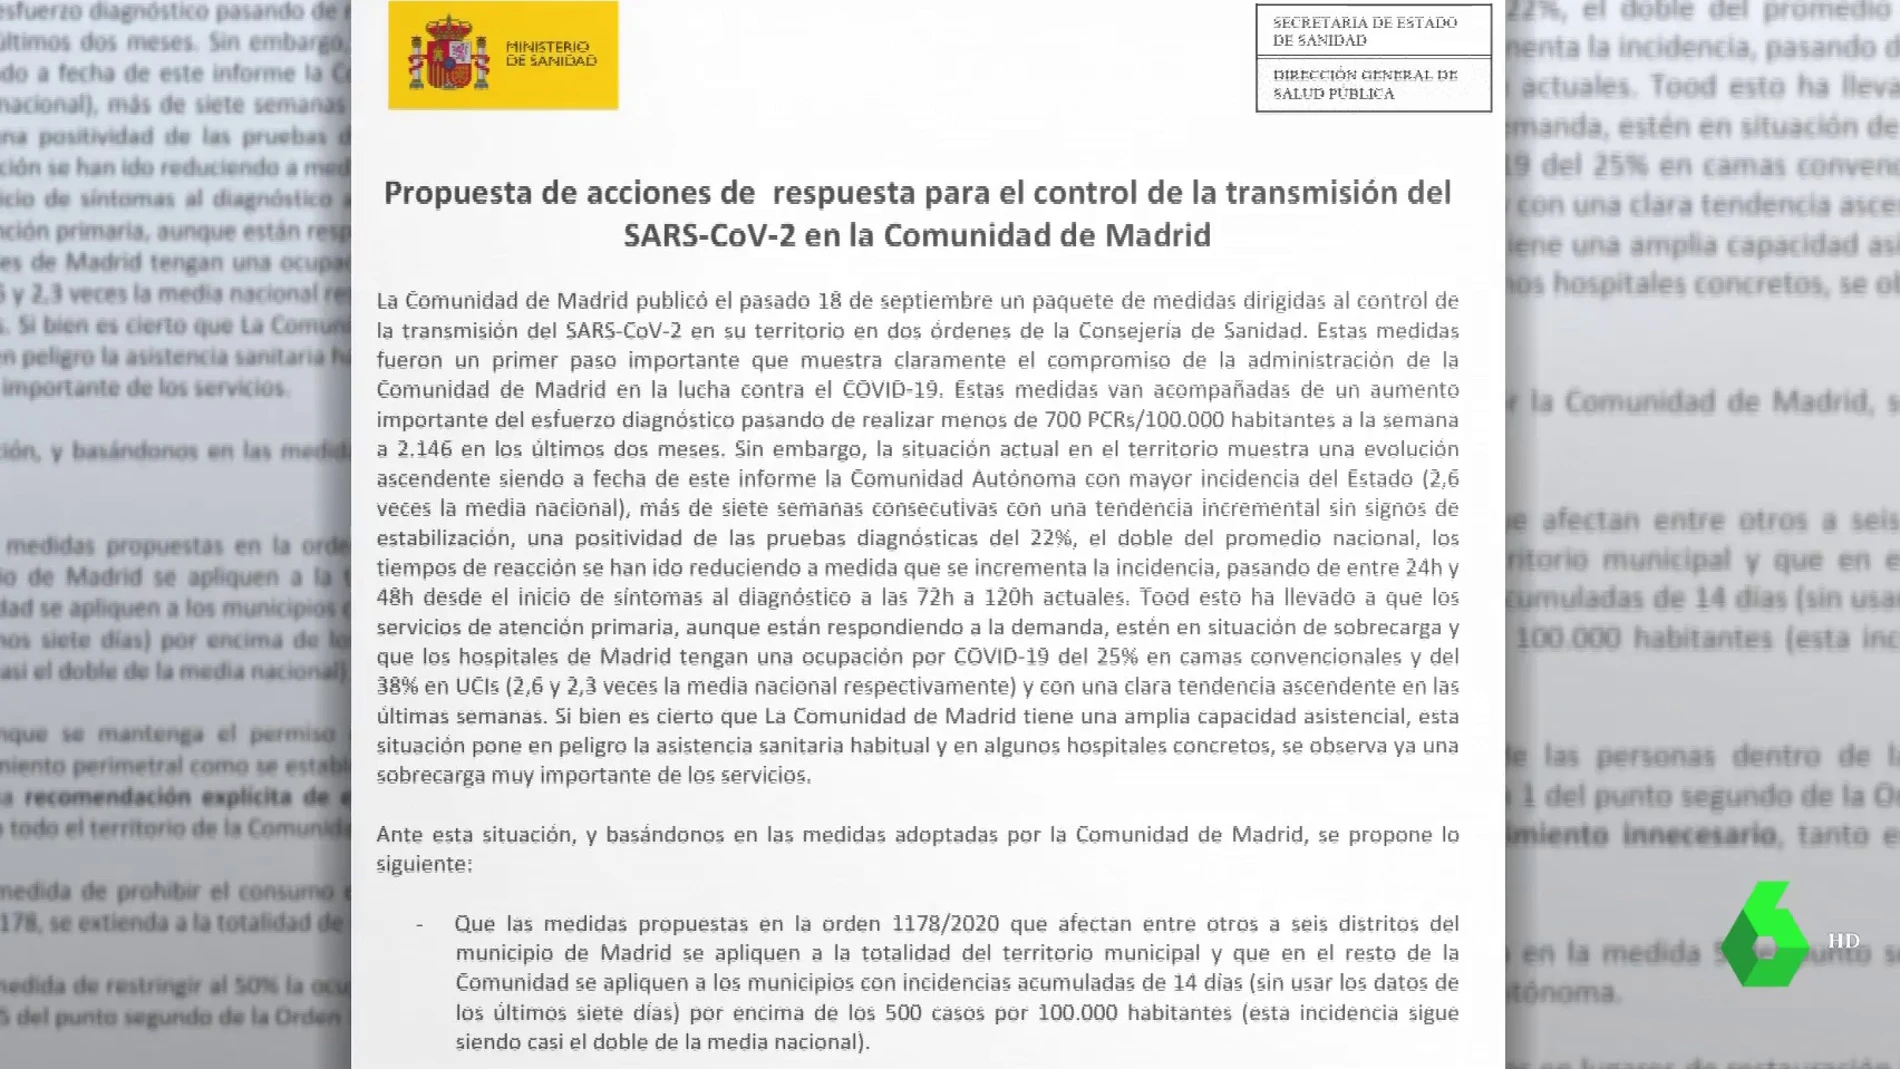 Documento entregado por Sanidad a la Comunidad de Madrid